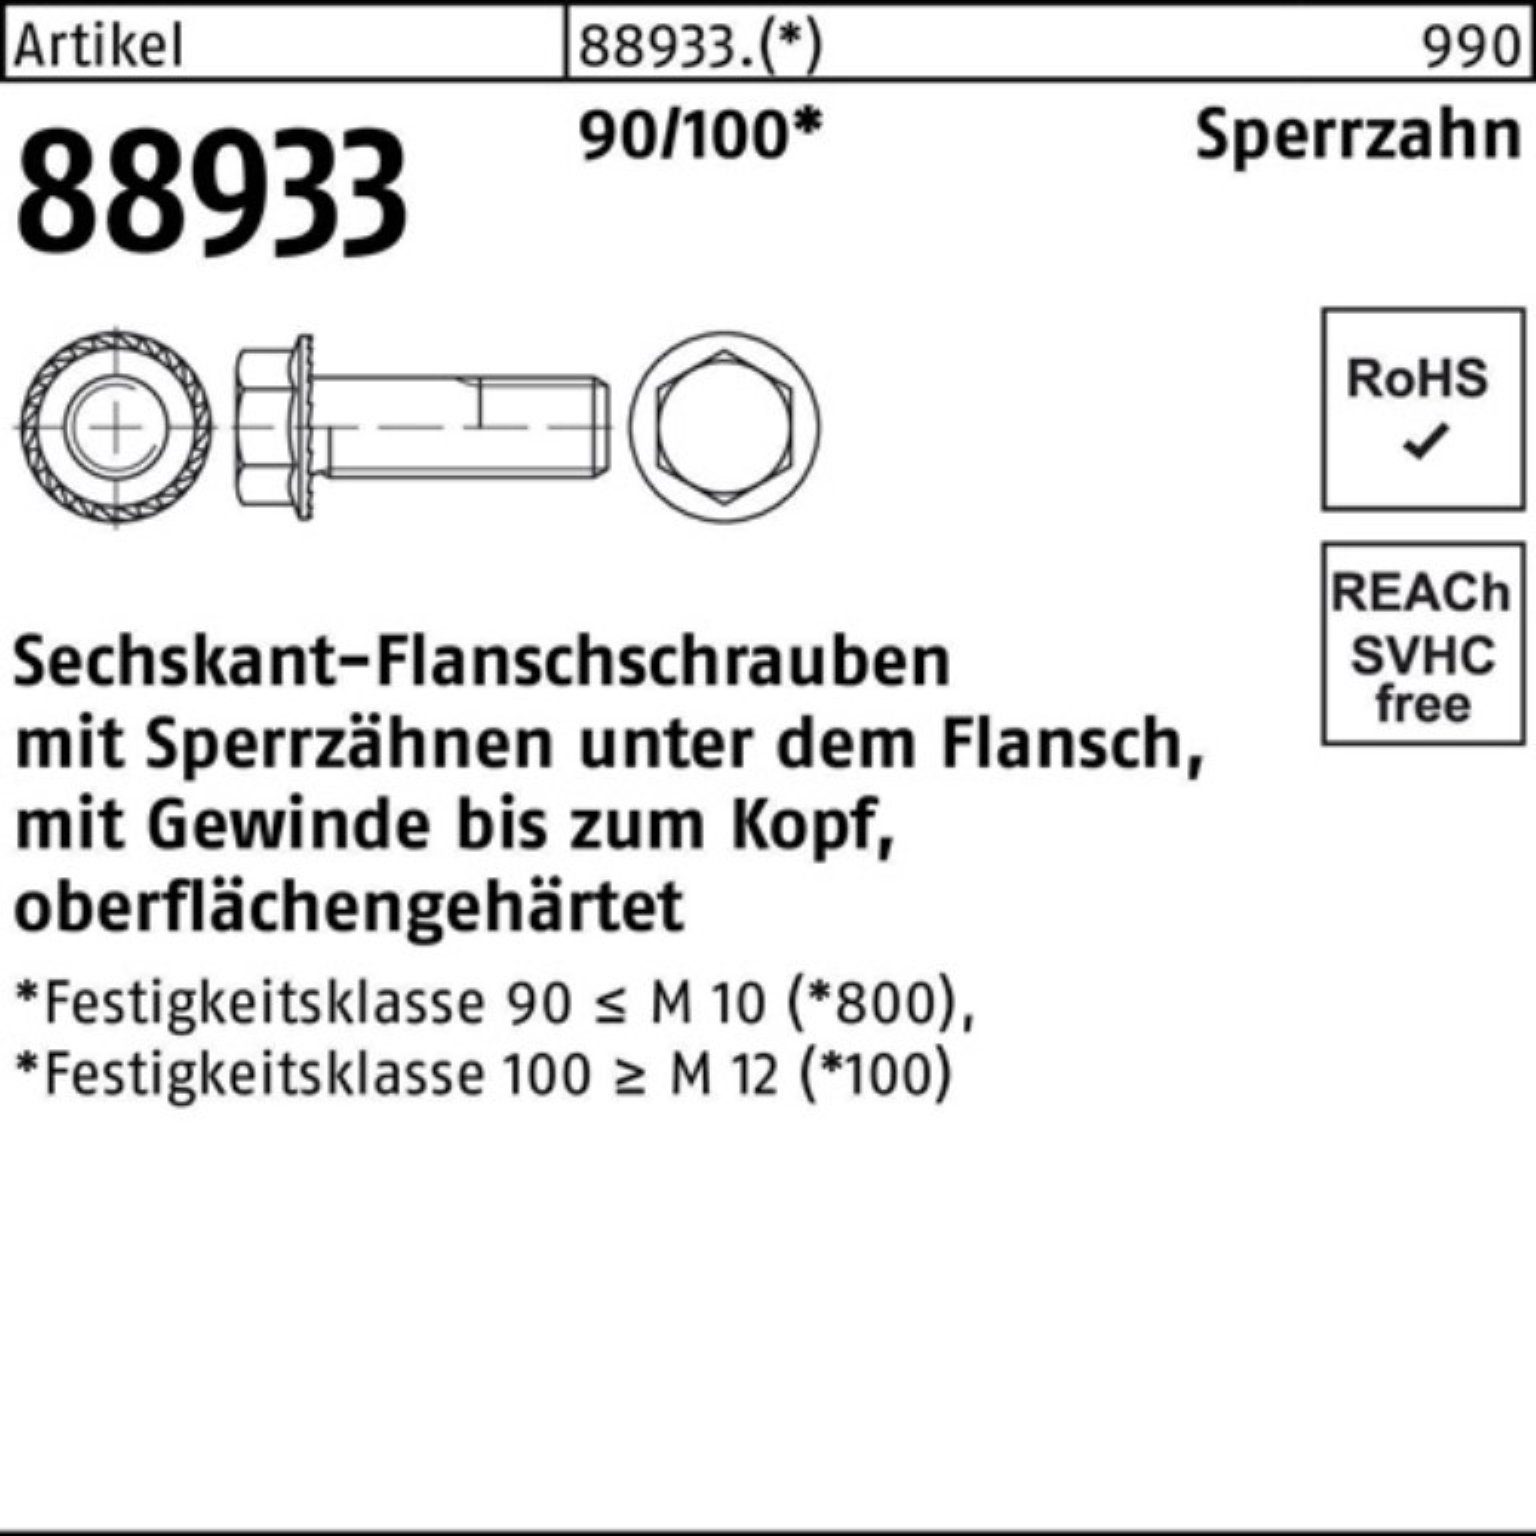 Sperrz. 90/100 R Reyher VG M16x Pack 100er Sechskantflanschschraube 70 88933 Schraube